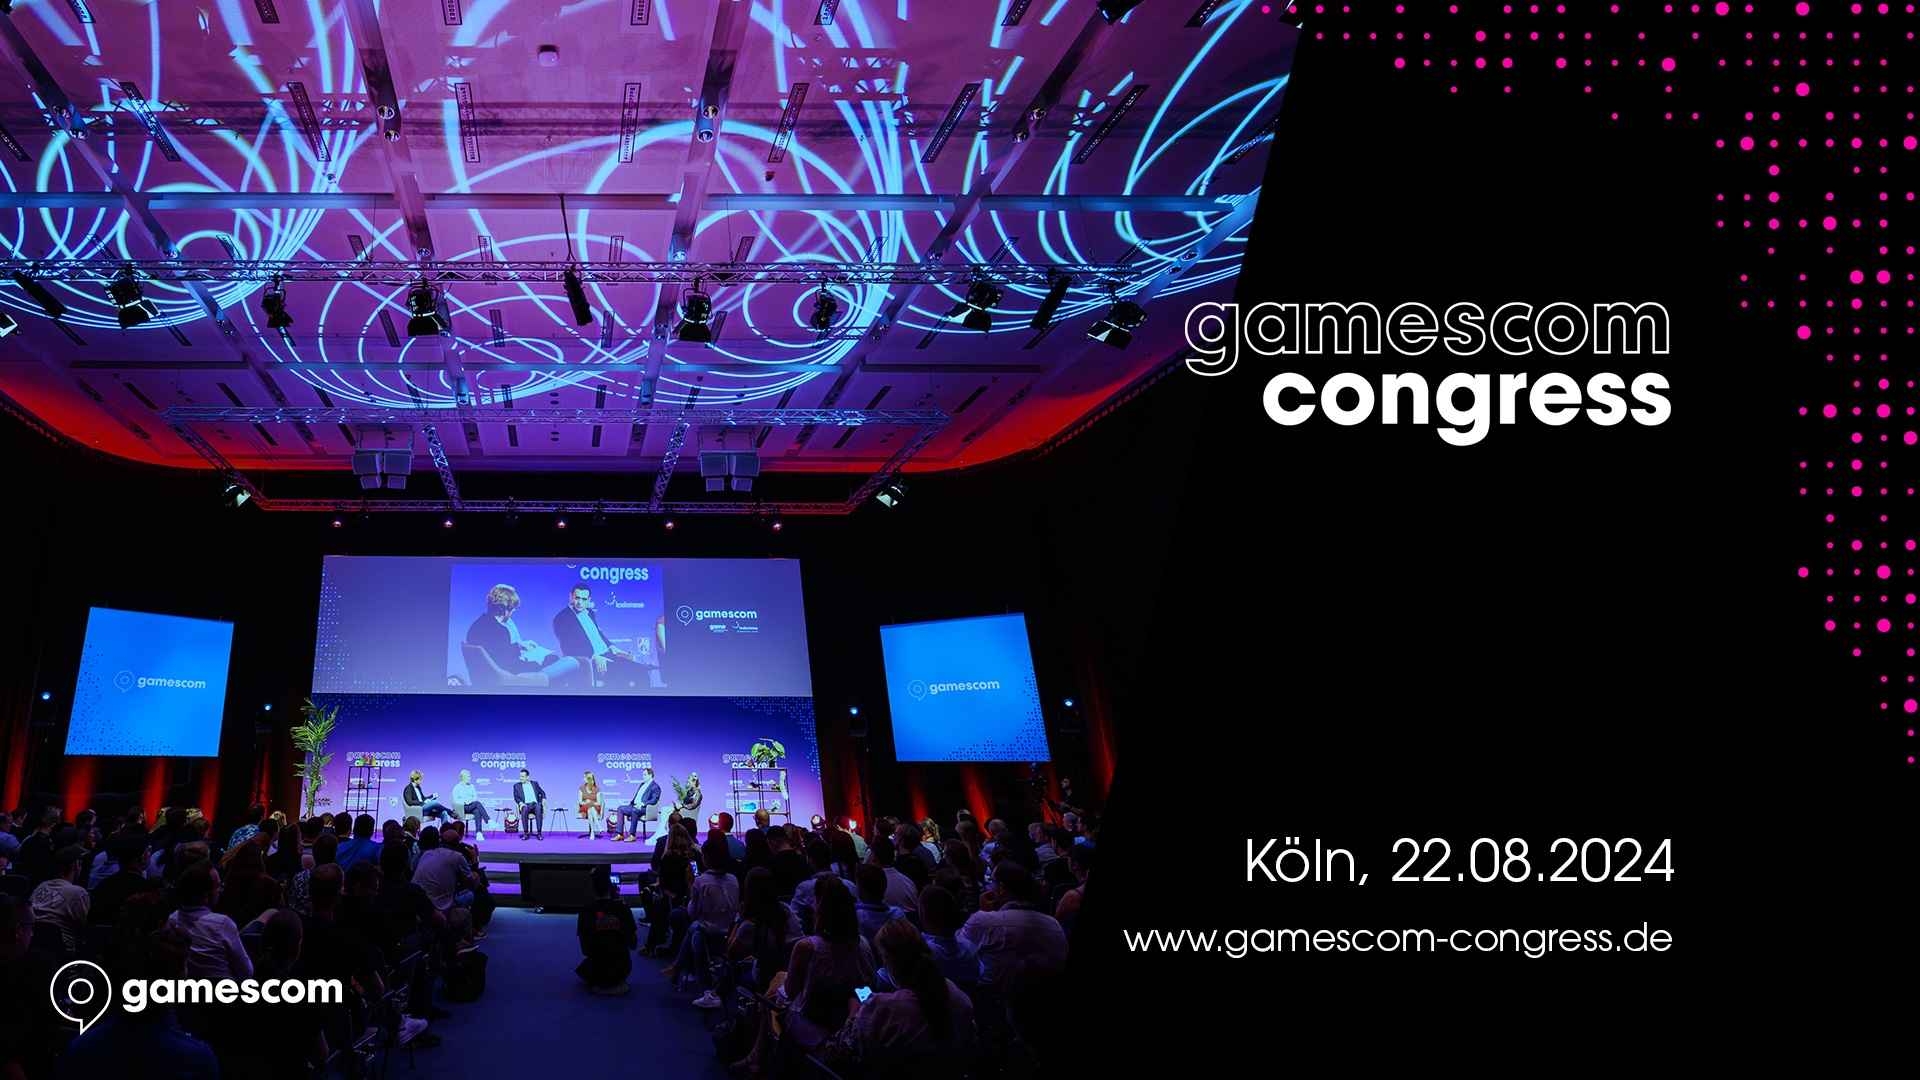 gamescom congress 2024